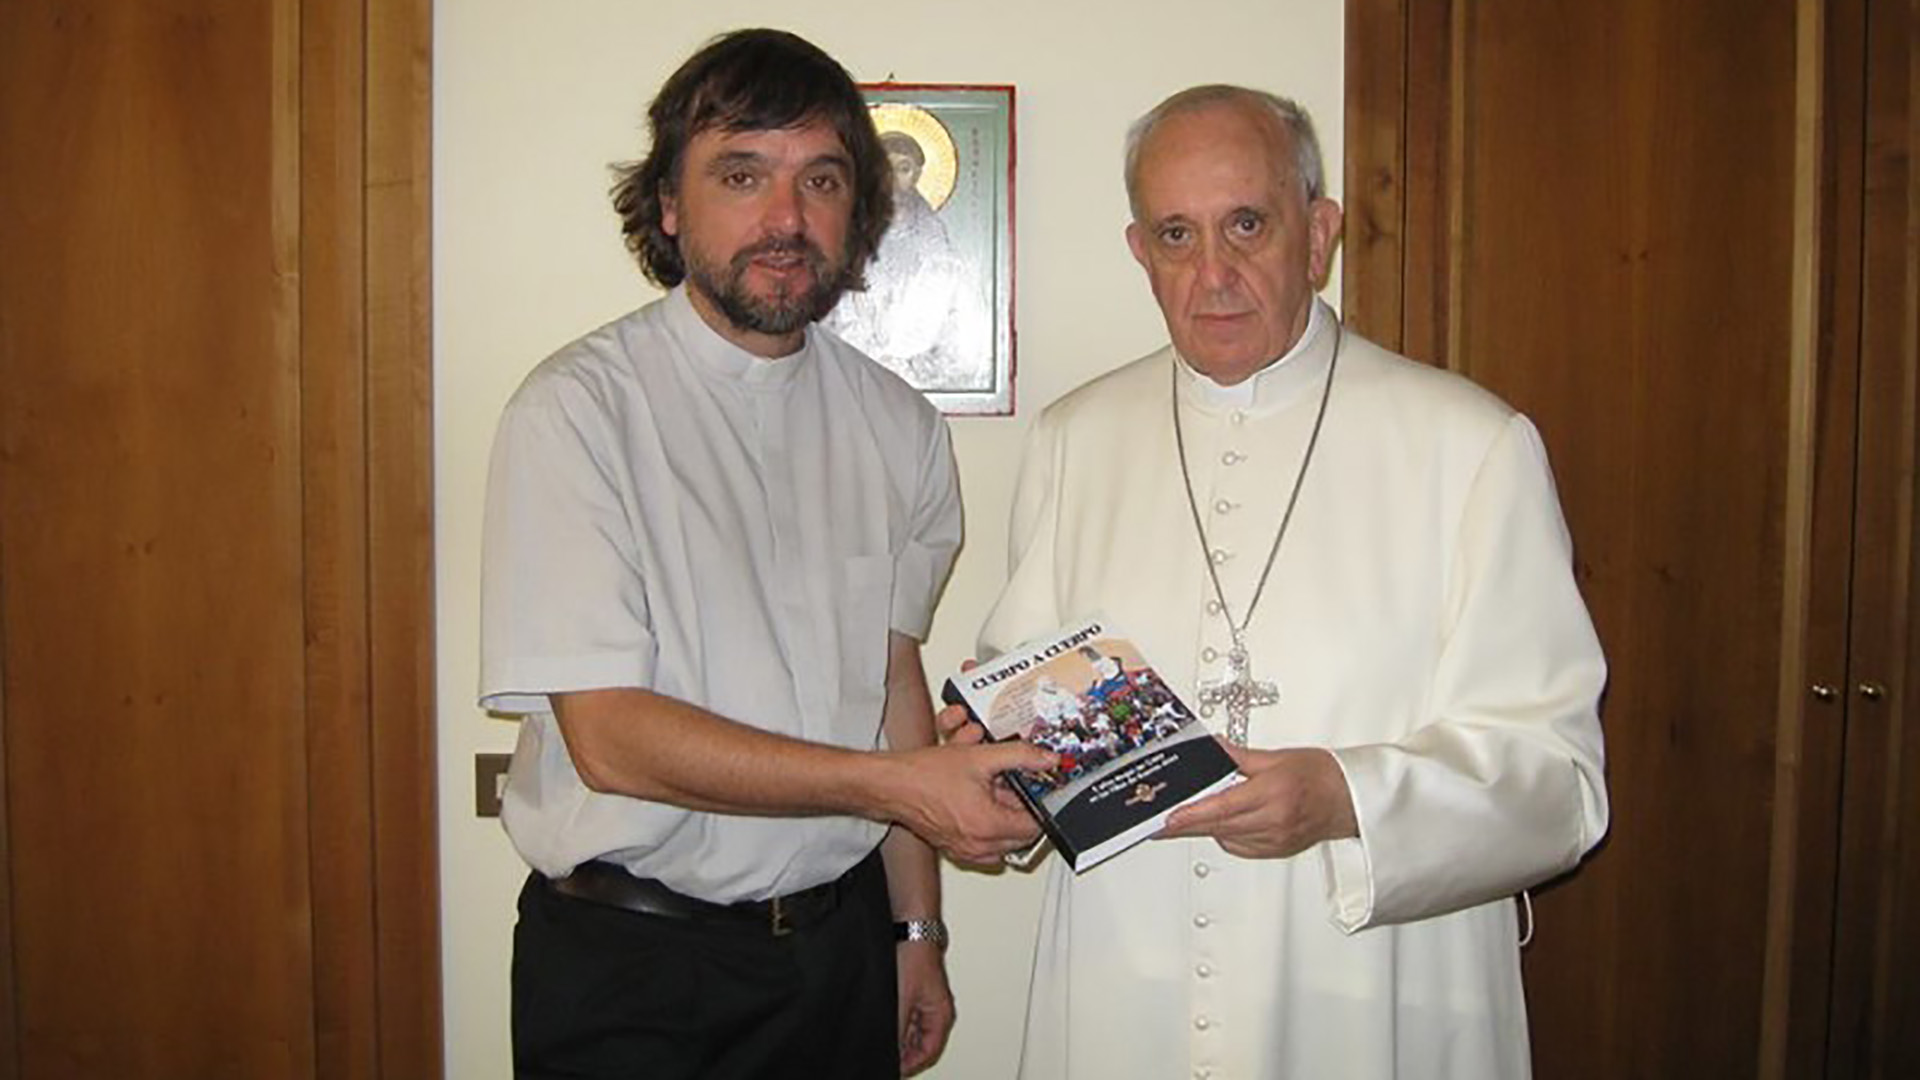 El Padre Pepe junto al Papa Francisco cuando le entregó su libro llamado "Cuerpo a cuerpo".